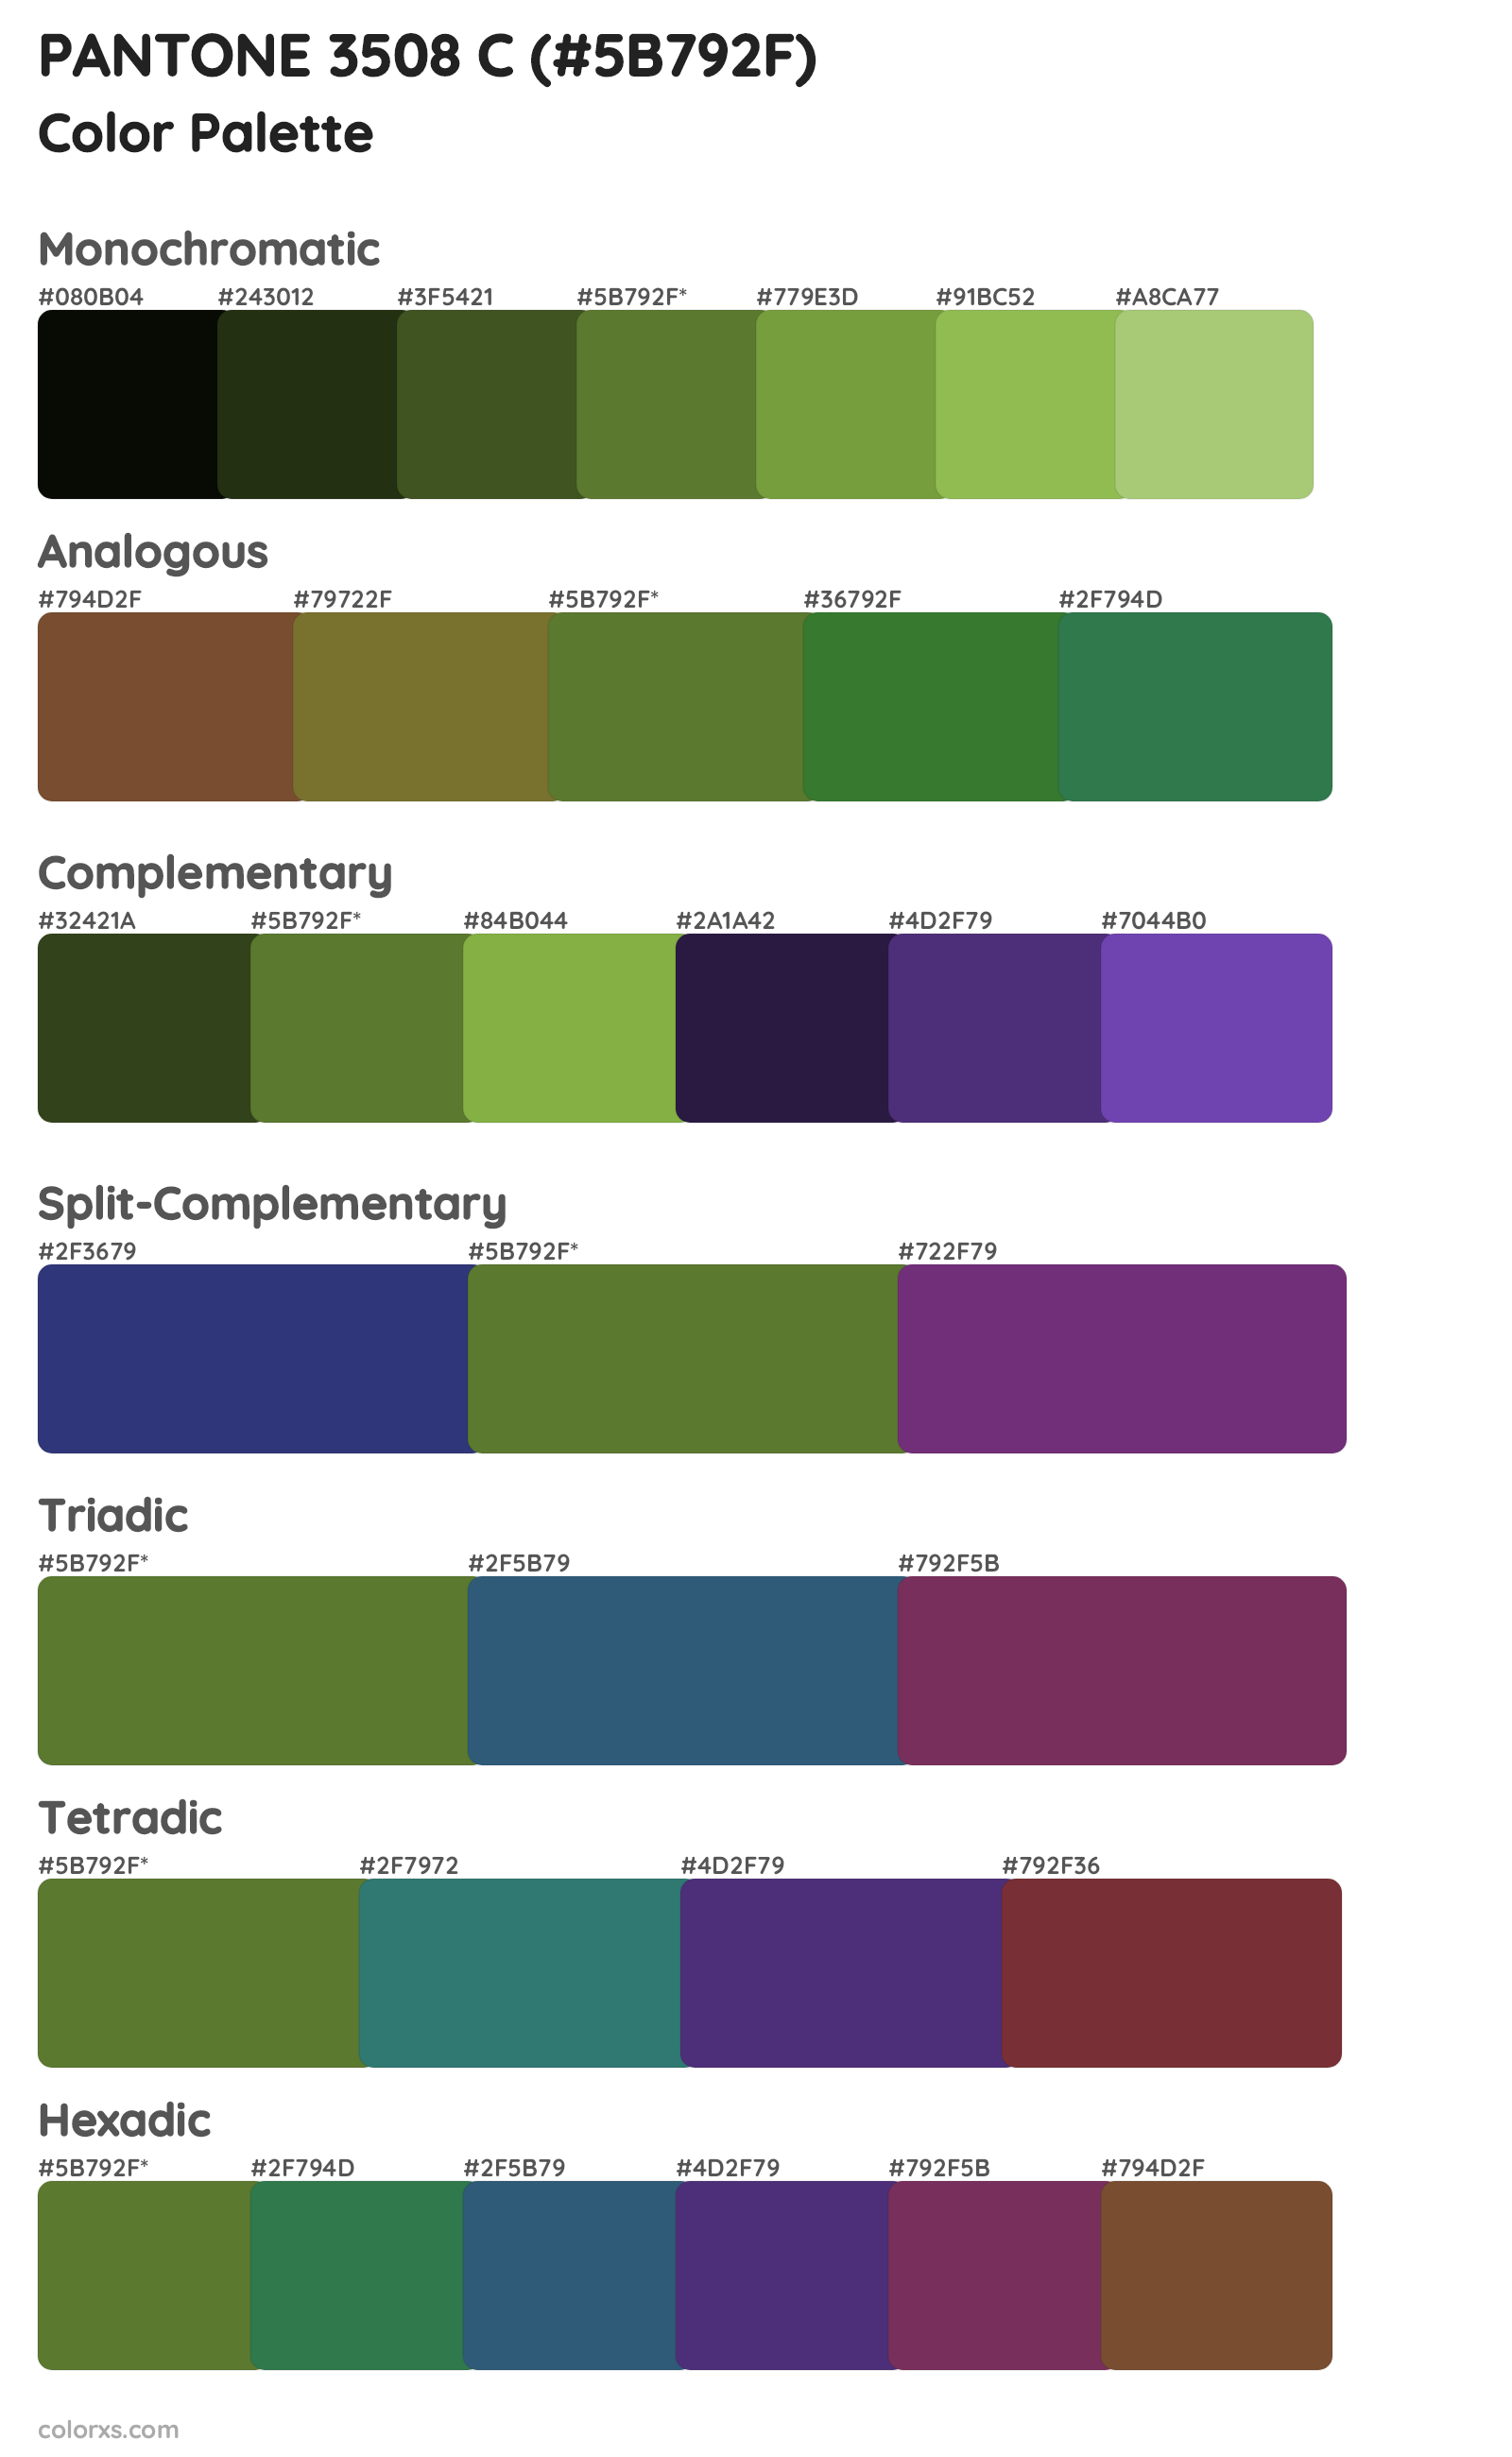 PANTONE 3508 C Color Scheme Palettes